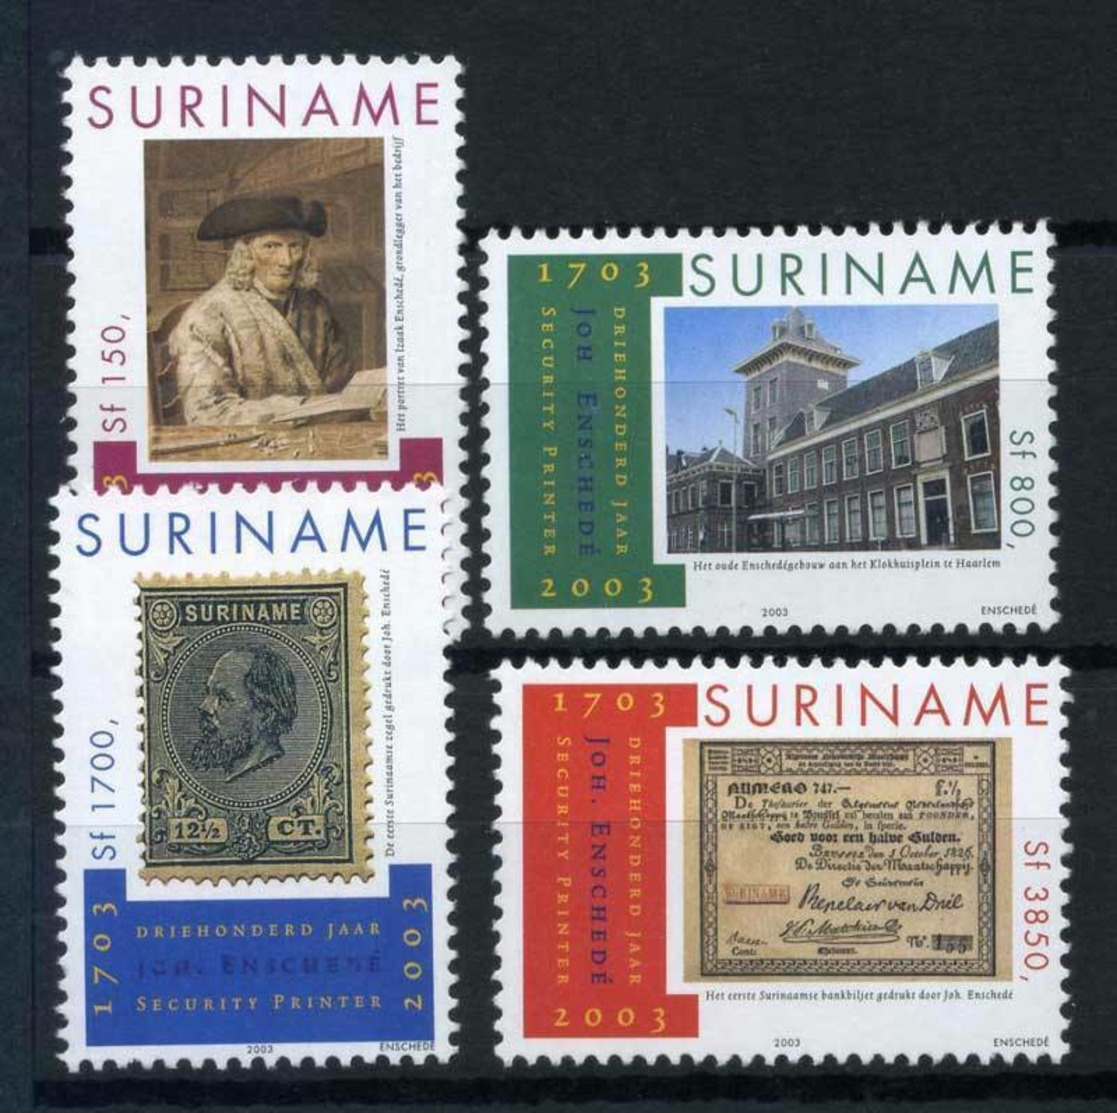 SURINAME, 2003 Joh. Enschede 4v MNH - Surinam